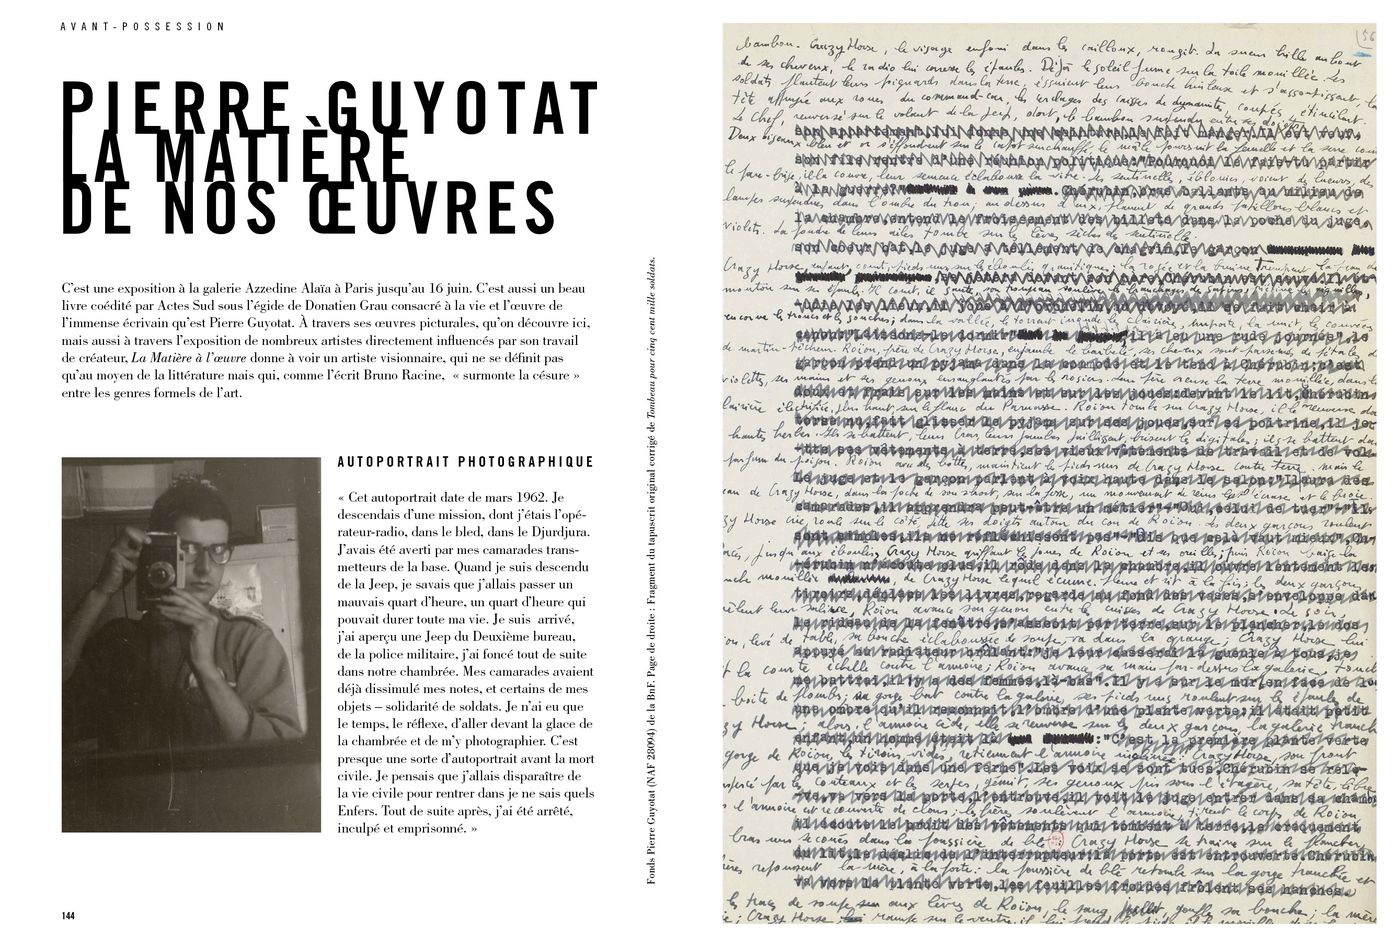 Possession Immédiate Volume 5 - Livre sur Pierre Guyotat, La Matière de nos œuvres